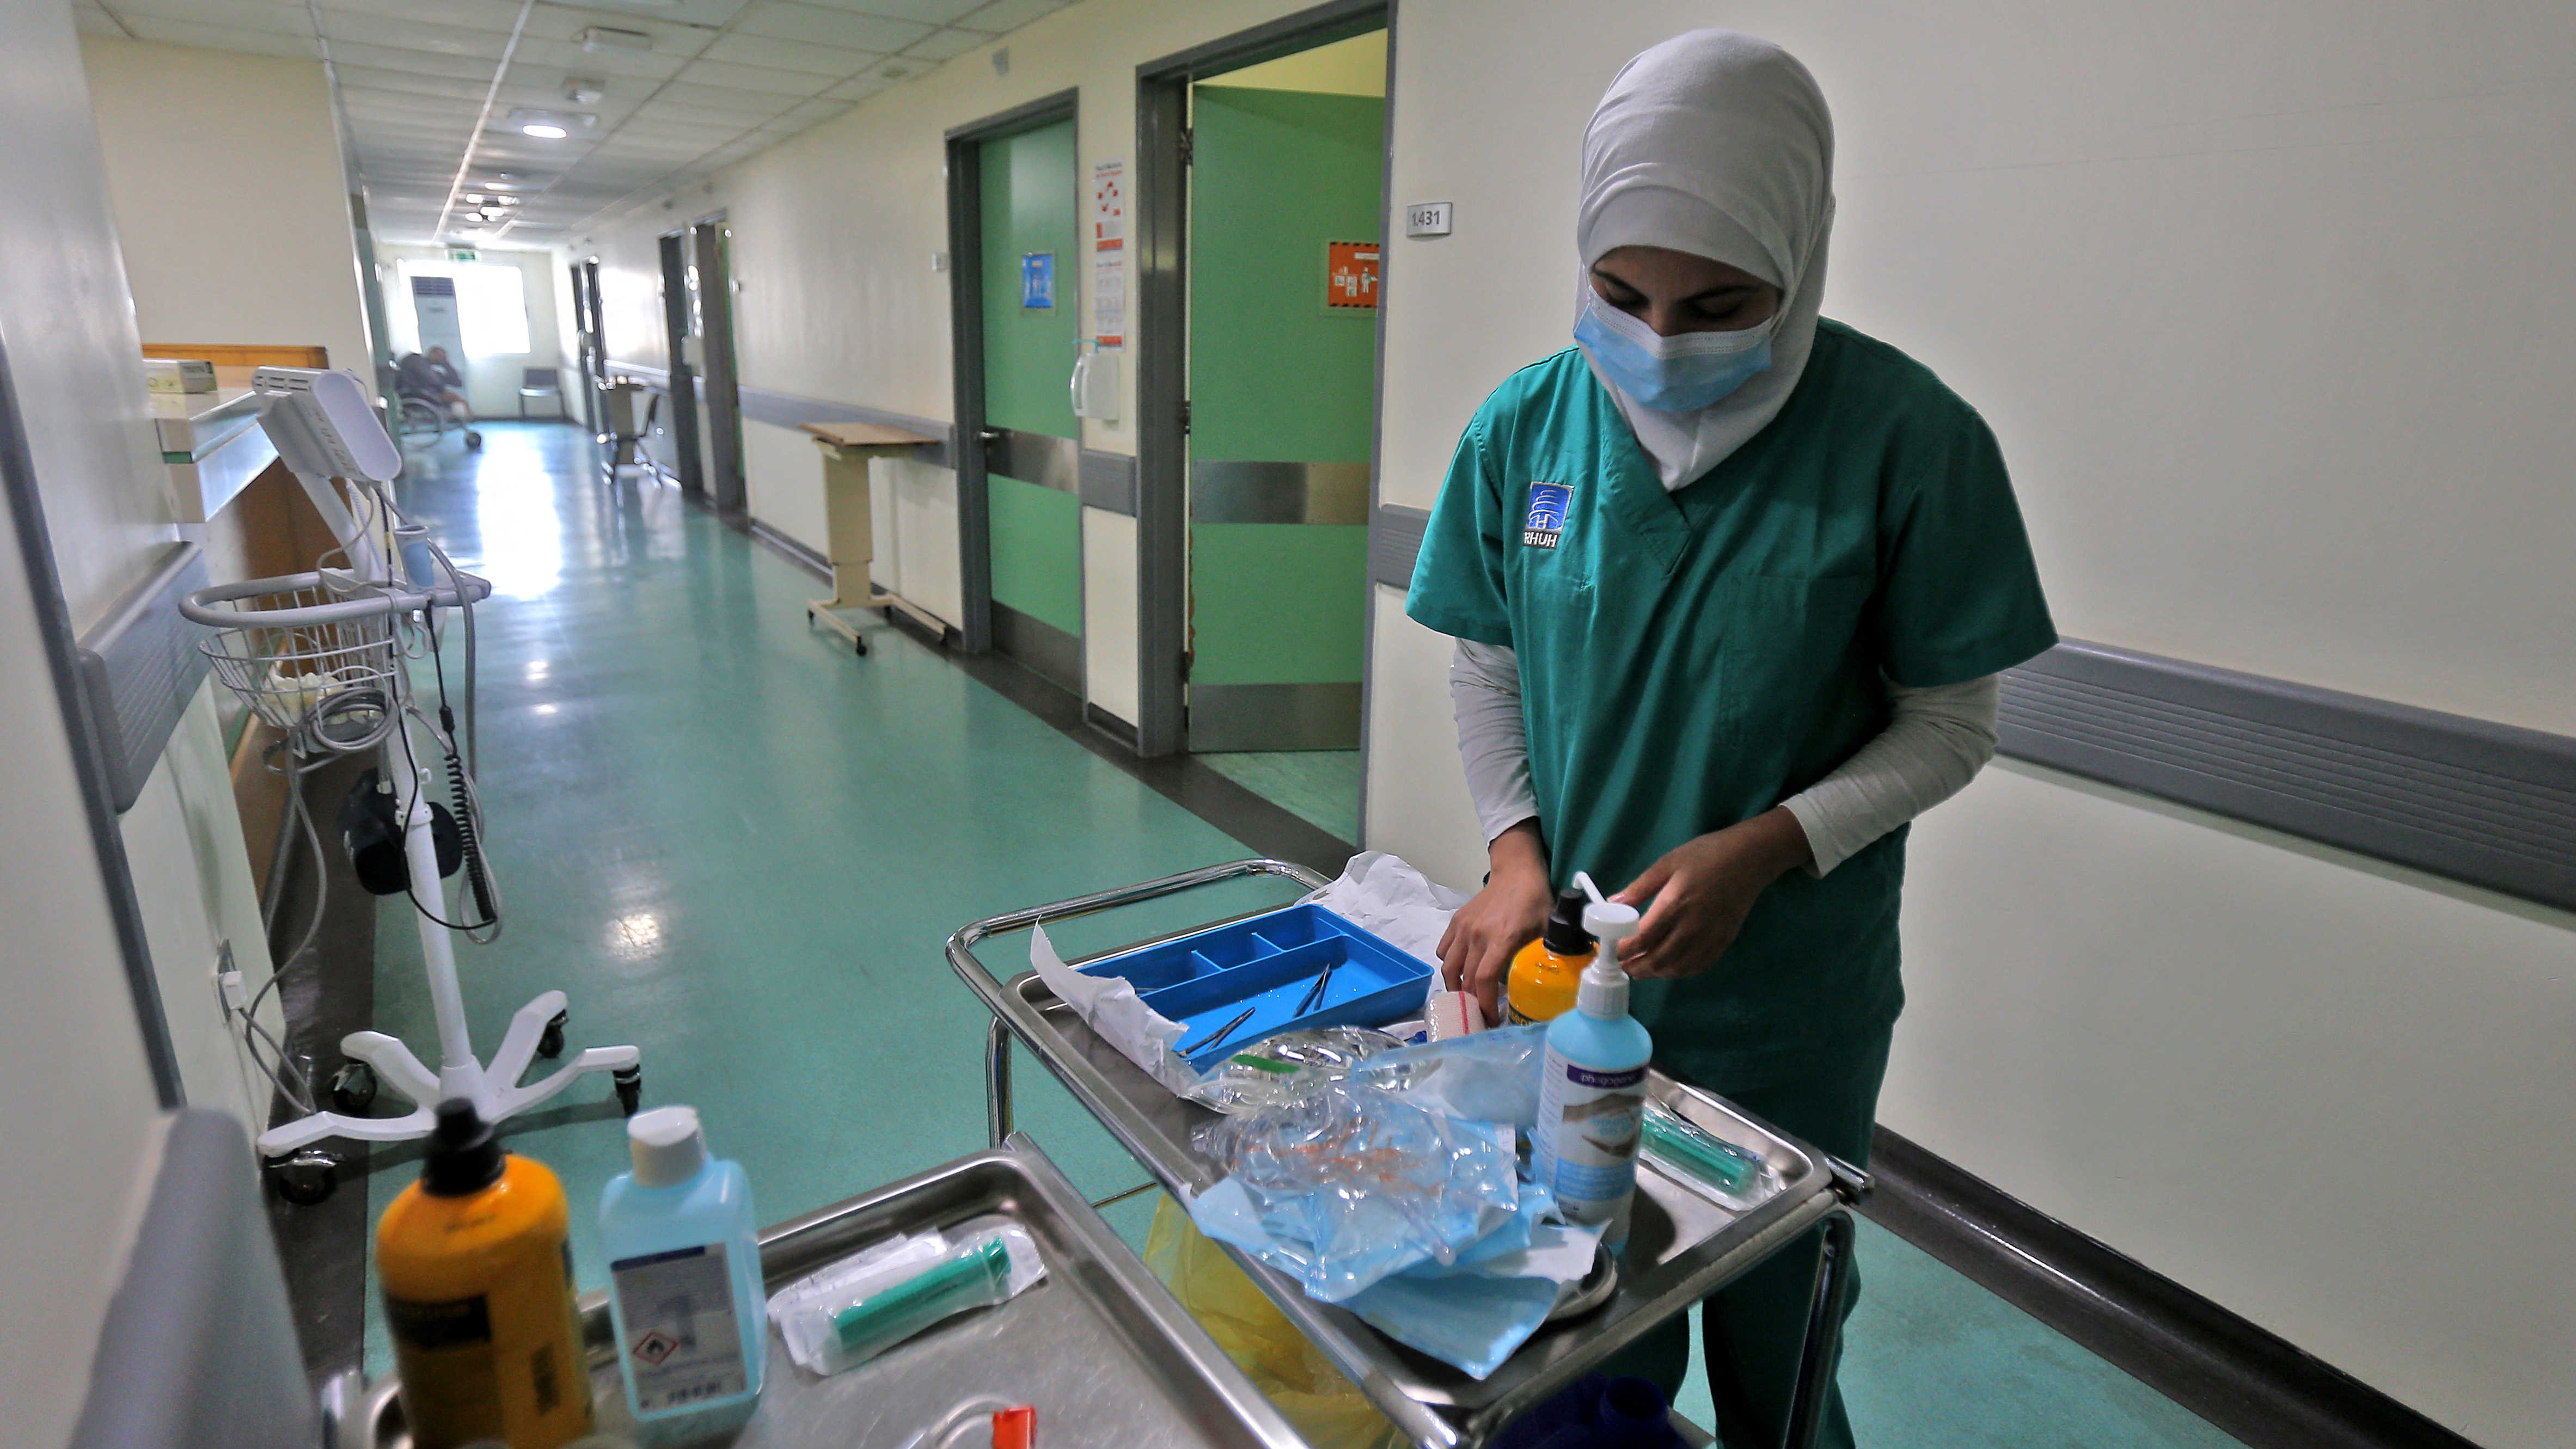 نقص الأدوية وتعثر الكهرباء يضع المستشفيات اللبنانية أمام مصير أسود